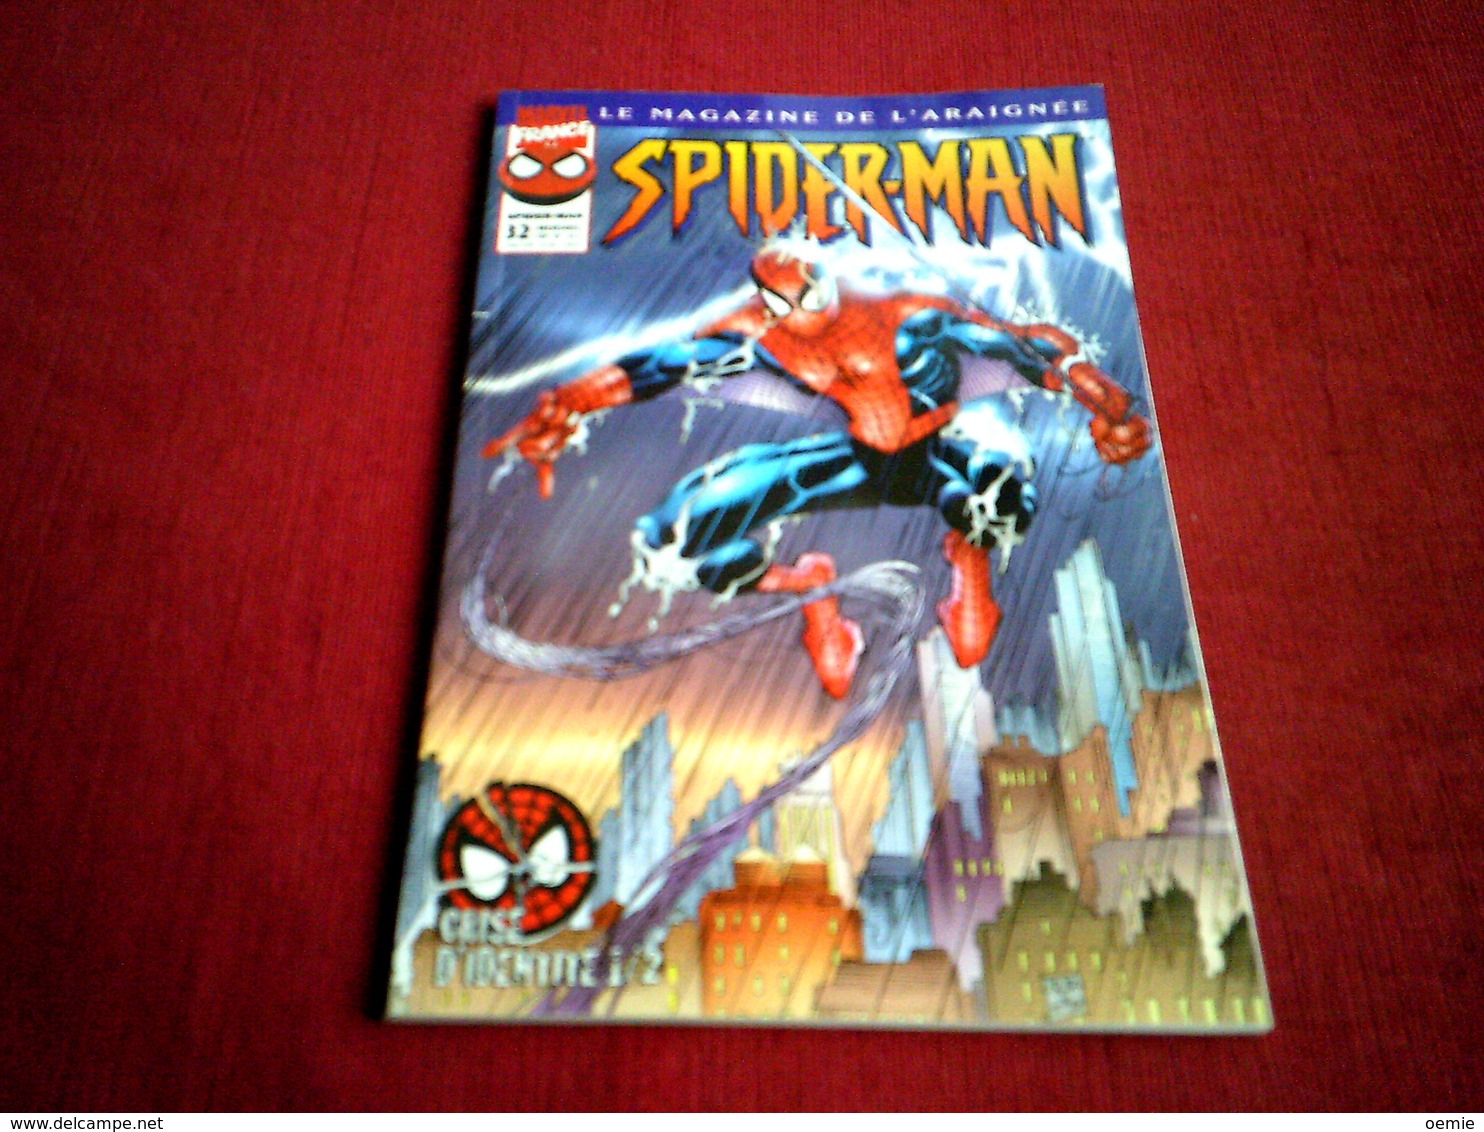 SPIDER MAN  LE MAGAZINE DE L'ARAIGNEE  N° 32   /  CRISE D'IDENTITE   1 / 2  /  SEPTEMBRE 1999 - Spiderman